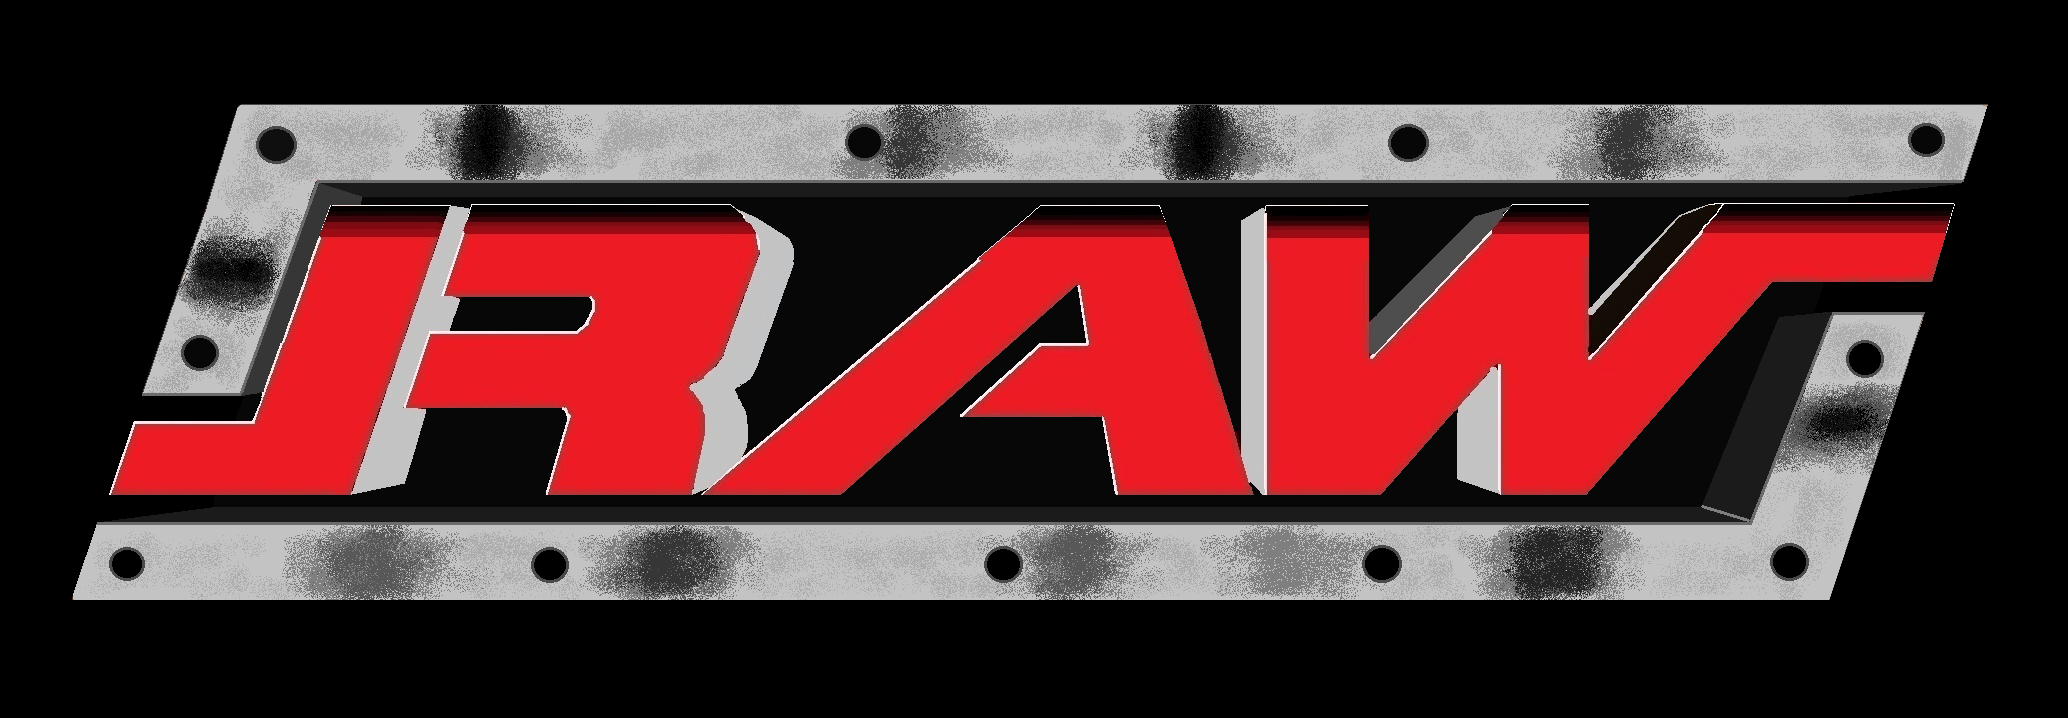 WWE Raw Logo - WWF Raw (2002) | Remade WWF/E Logos | WWE, Wrestling